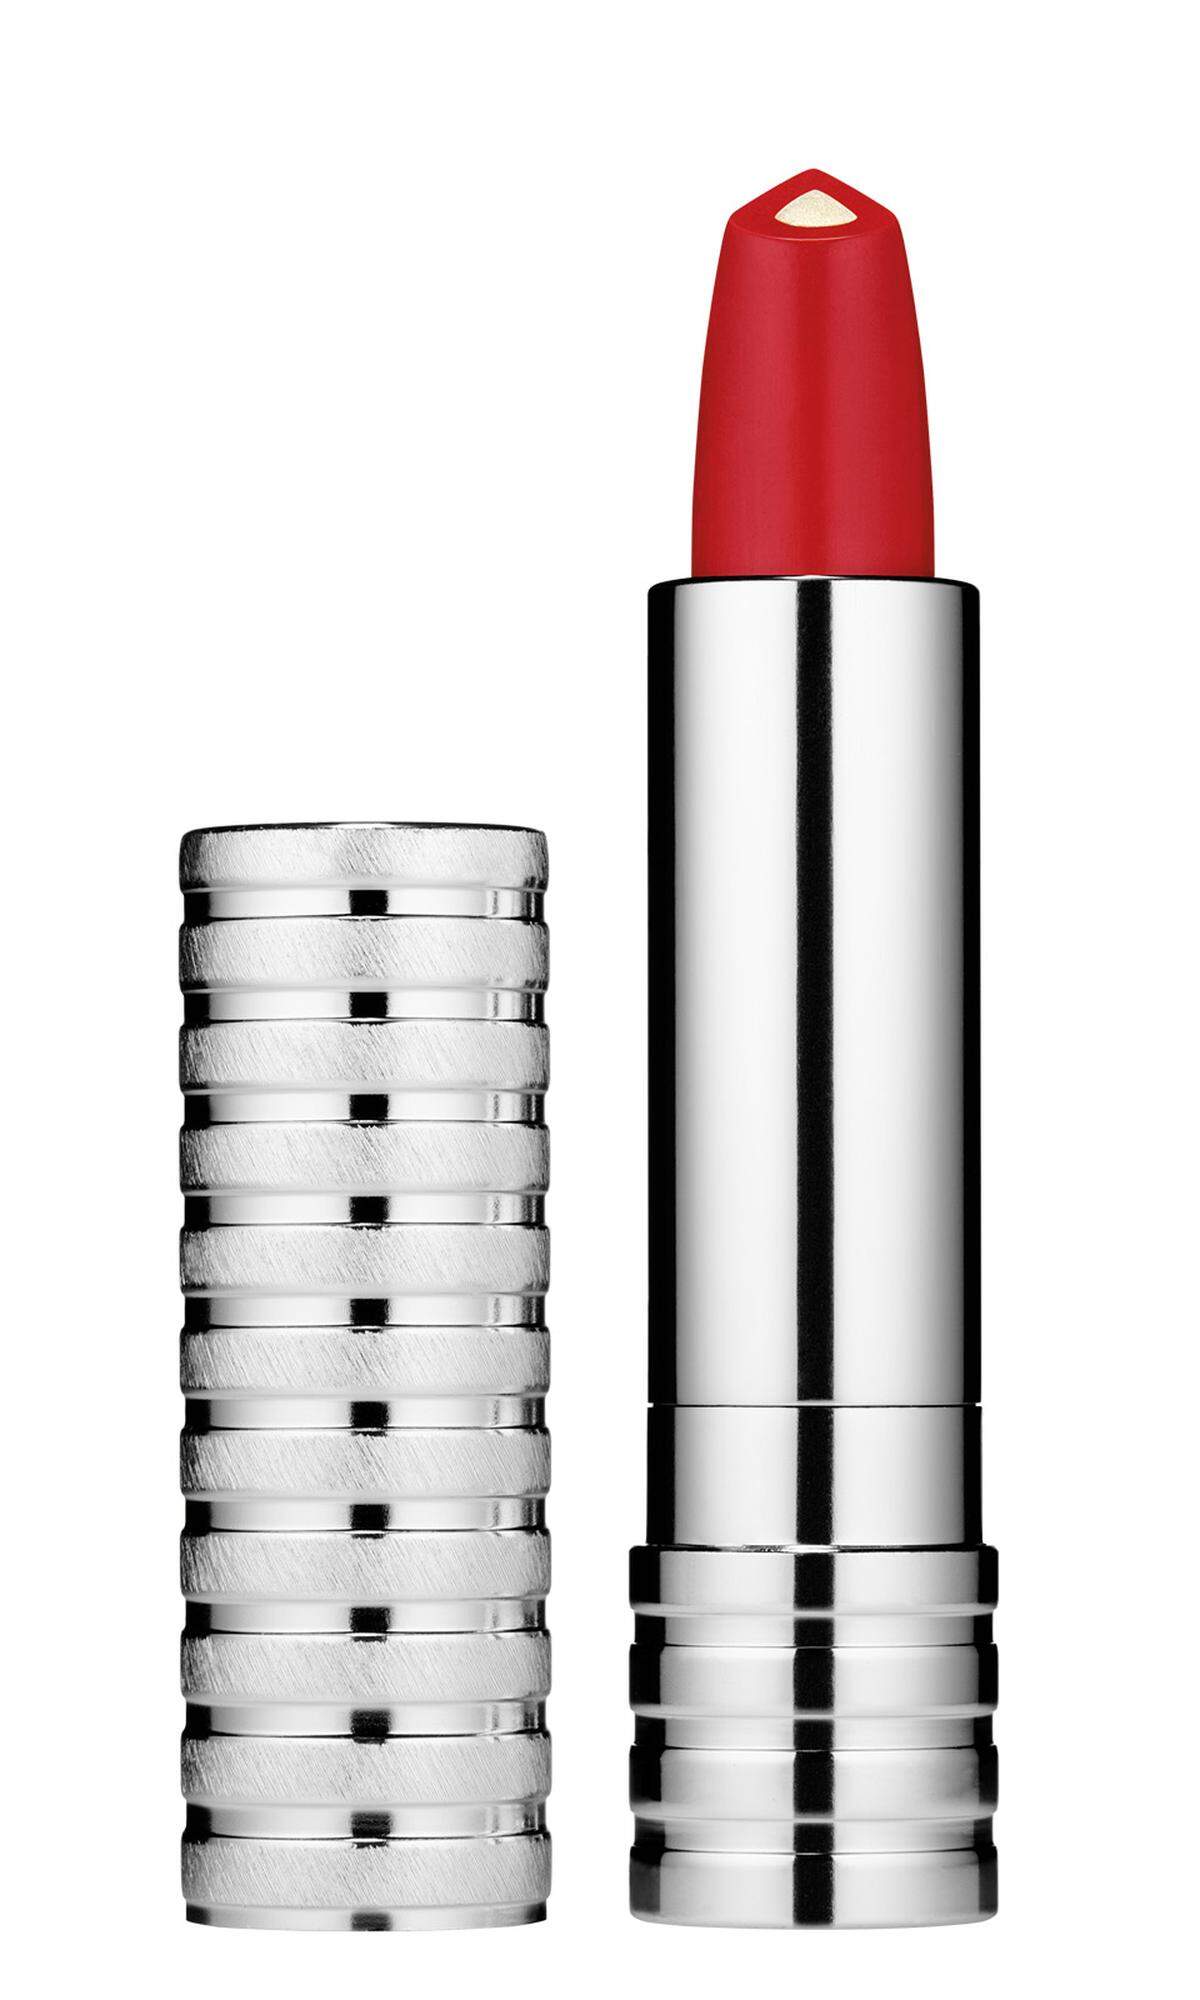 Lippenstift „Dramatically Different" von Clinique, 24 Euro, im Fachhandel erhältlich